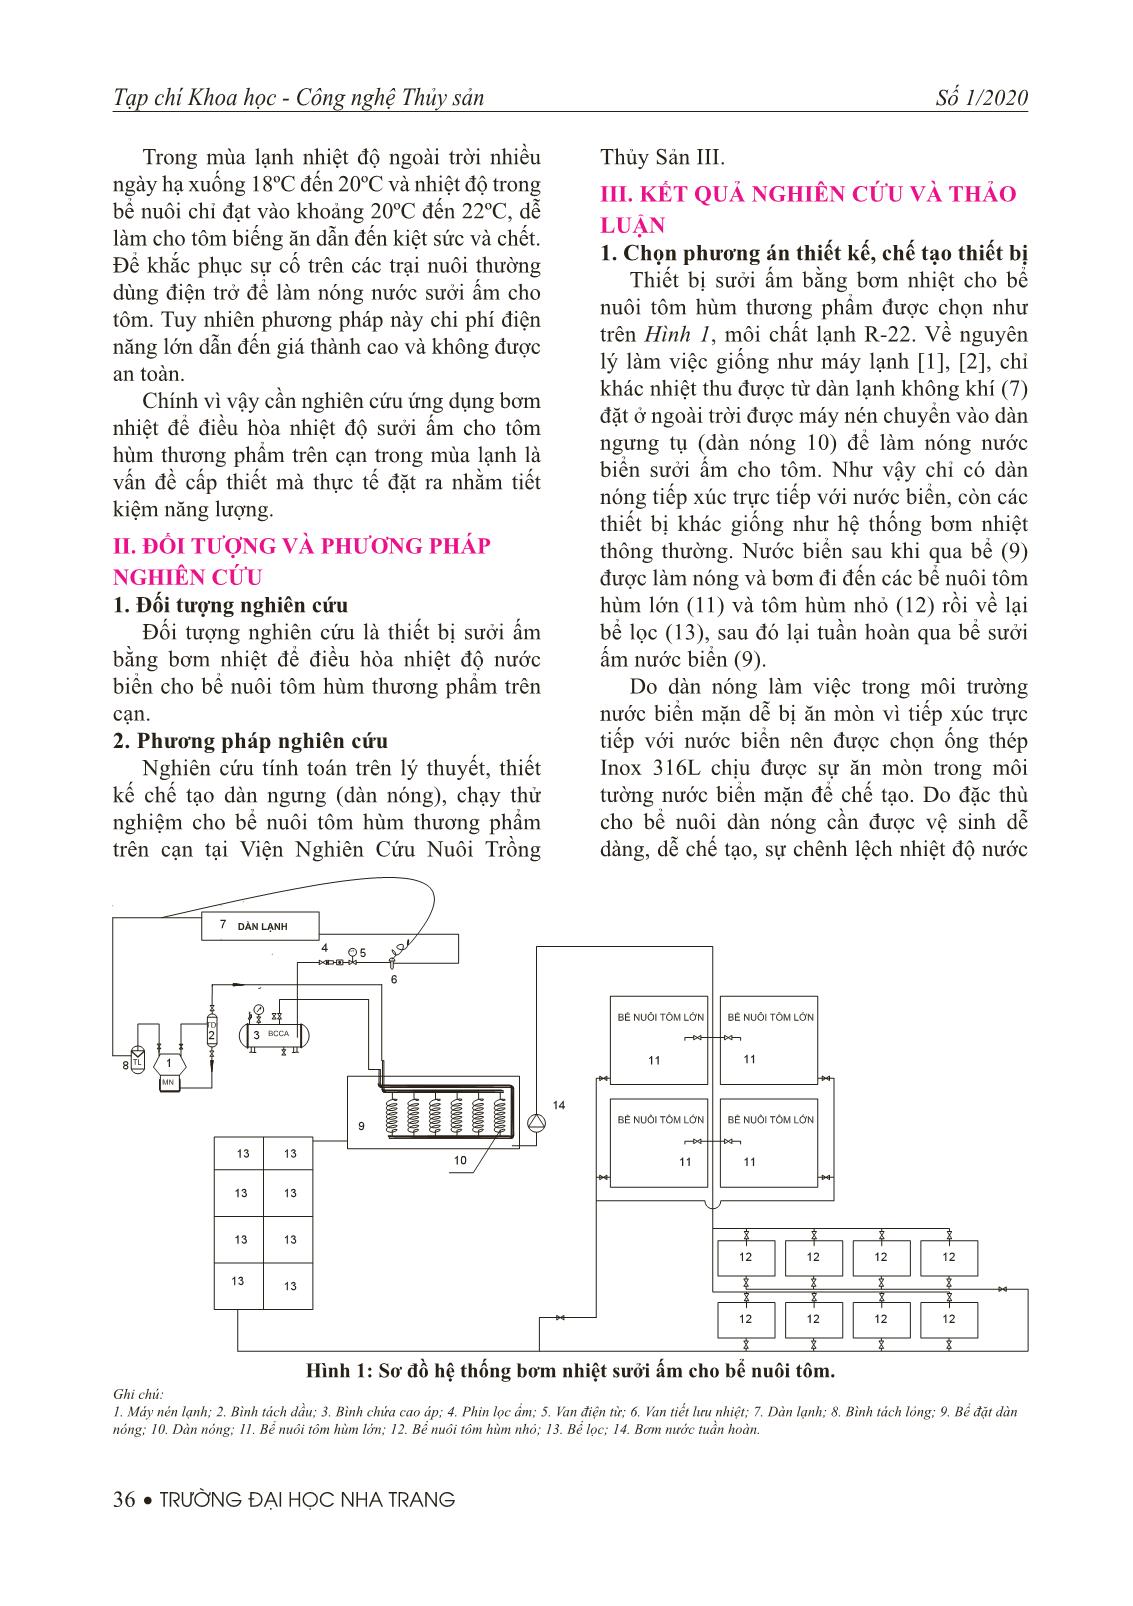 Nghiên cứu ứng dụng bơm nhiệt để sưởi ấm cho bể nuôi tôm hùm thương phẩm trên cạn trang 2